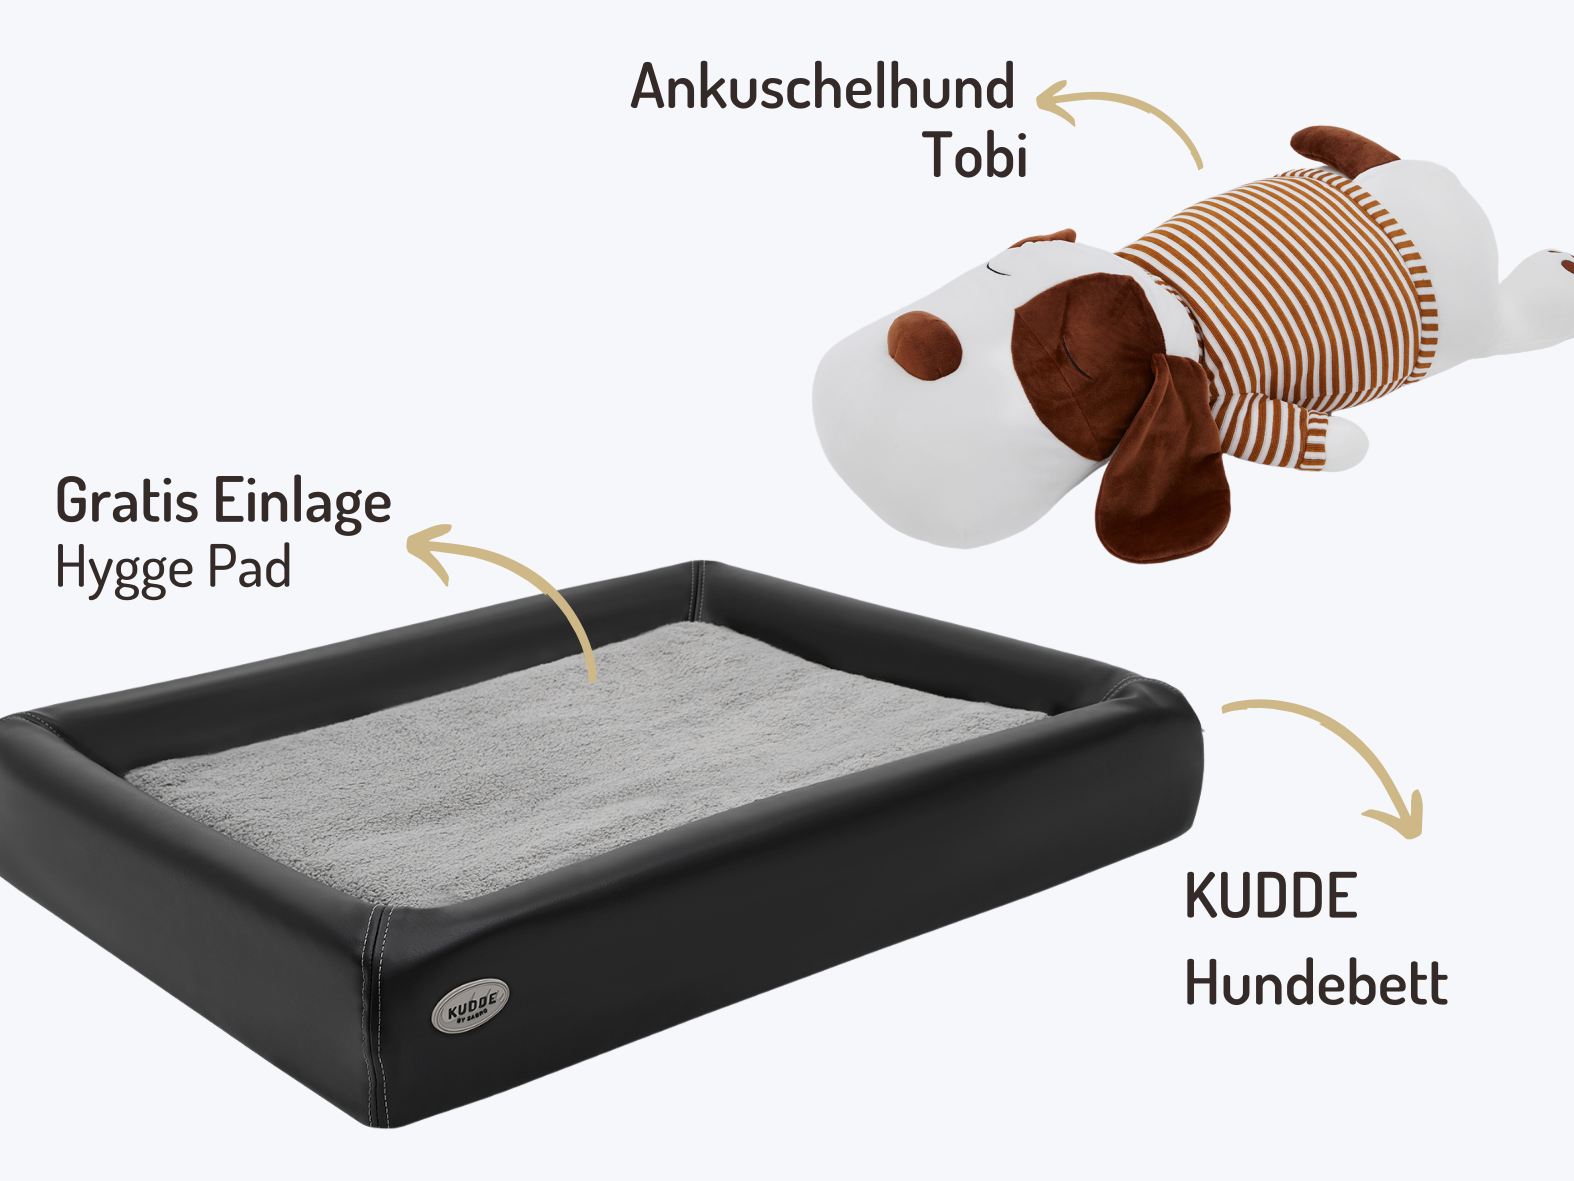 Buddy-Set | KUDDE Hundebett + Ankuschelhund